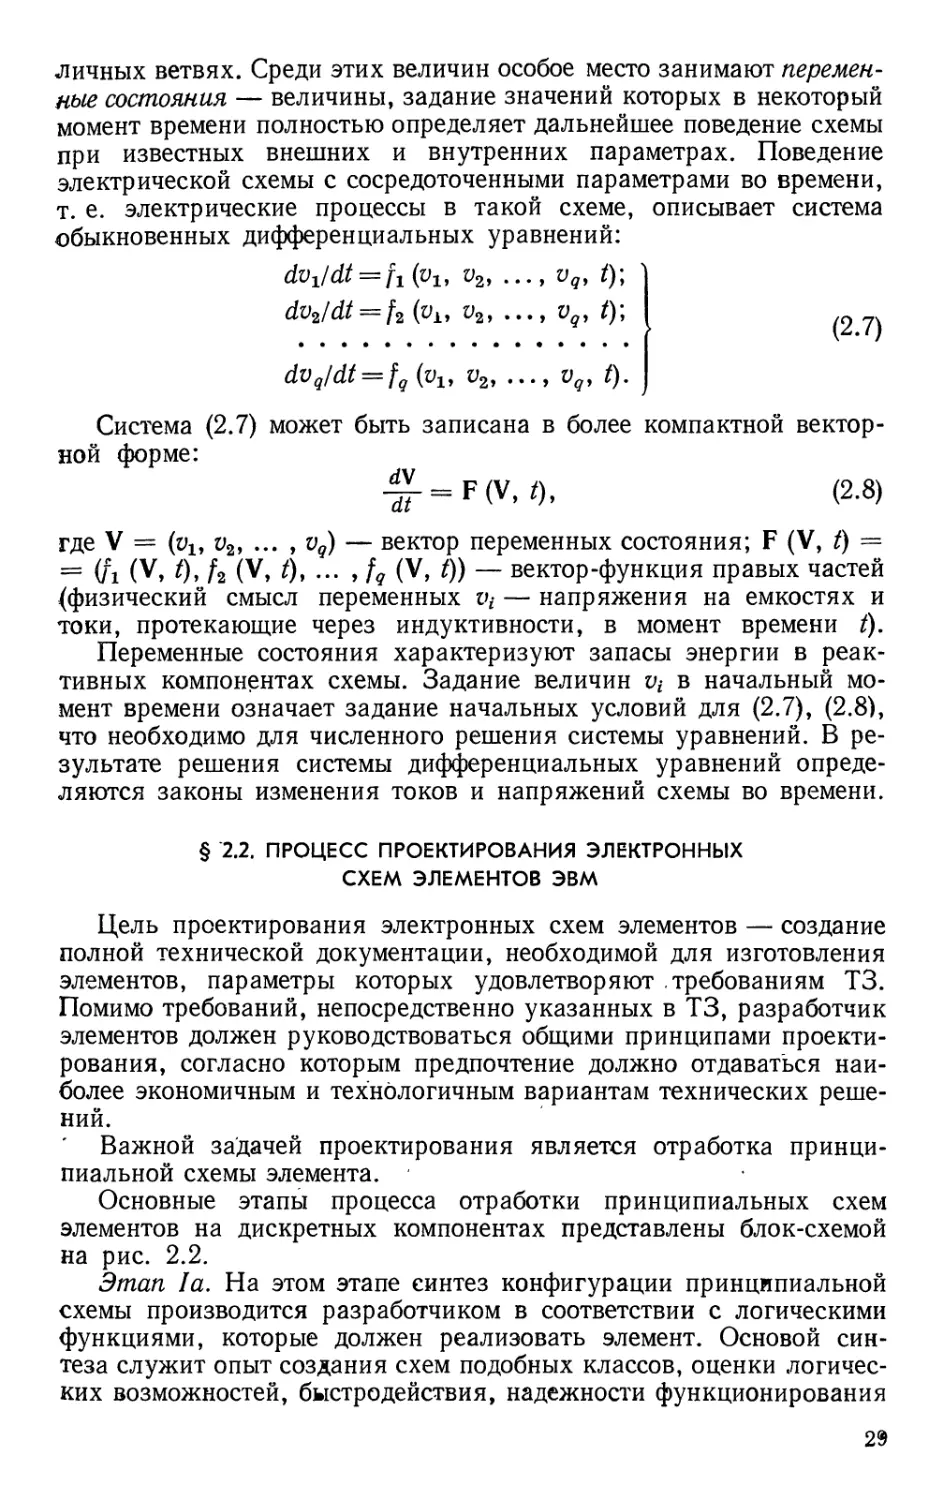 §2.2. Процесс проектирования электронных схем элементов ЭВМ